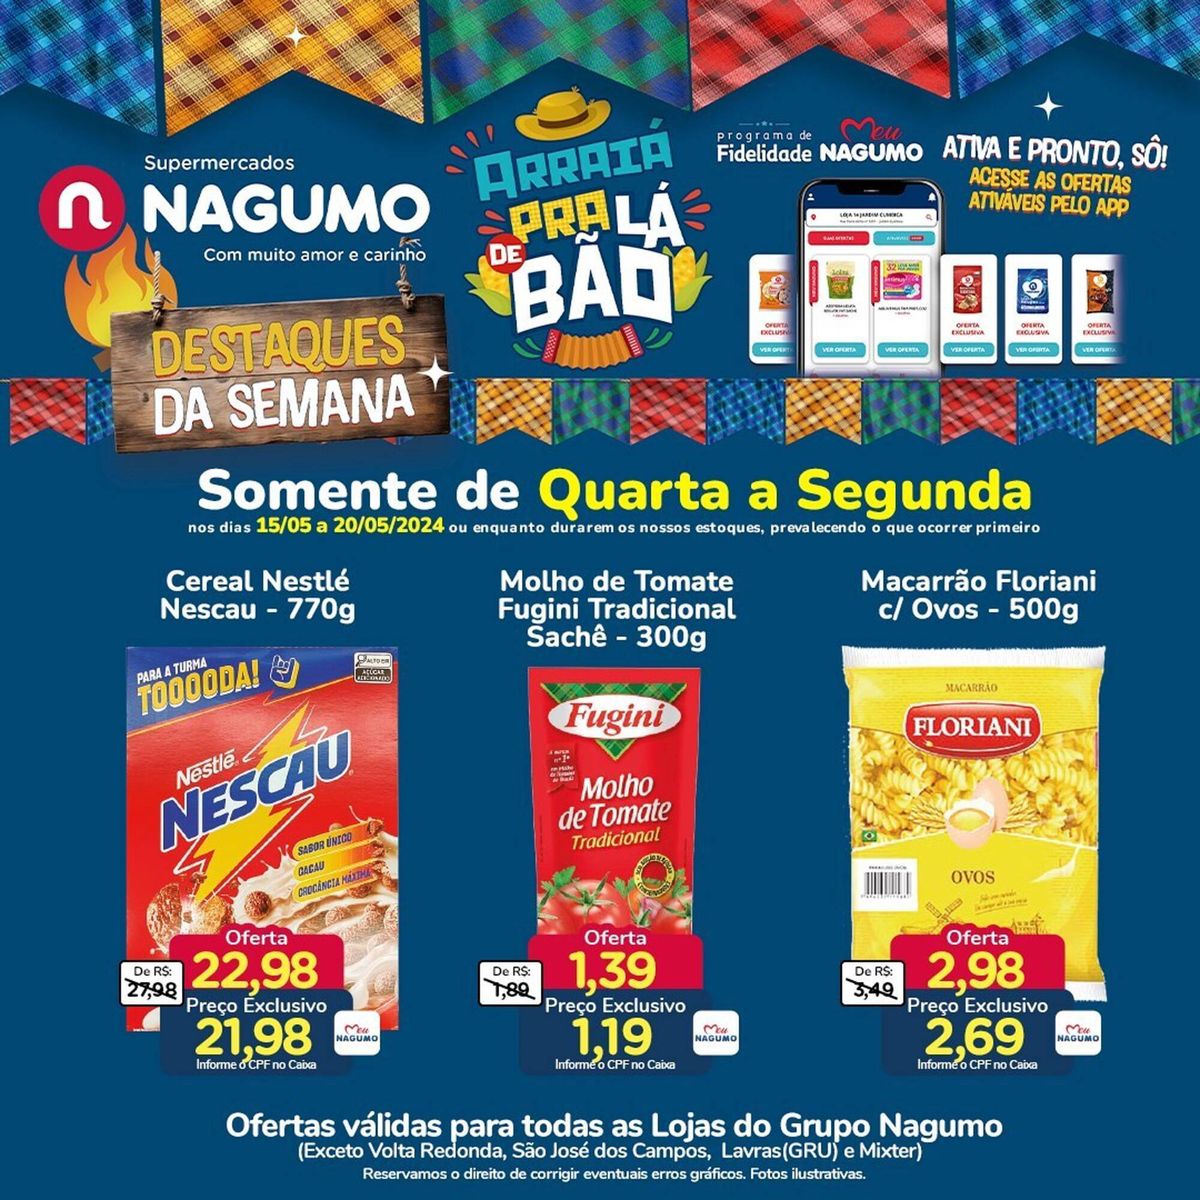 Supermercados - Promoção de Cereais, Molho de Tomate e Macarrão